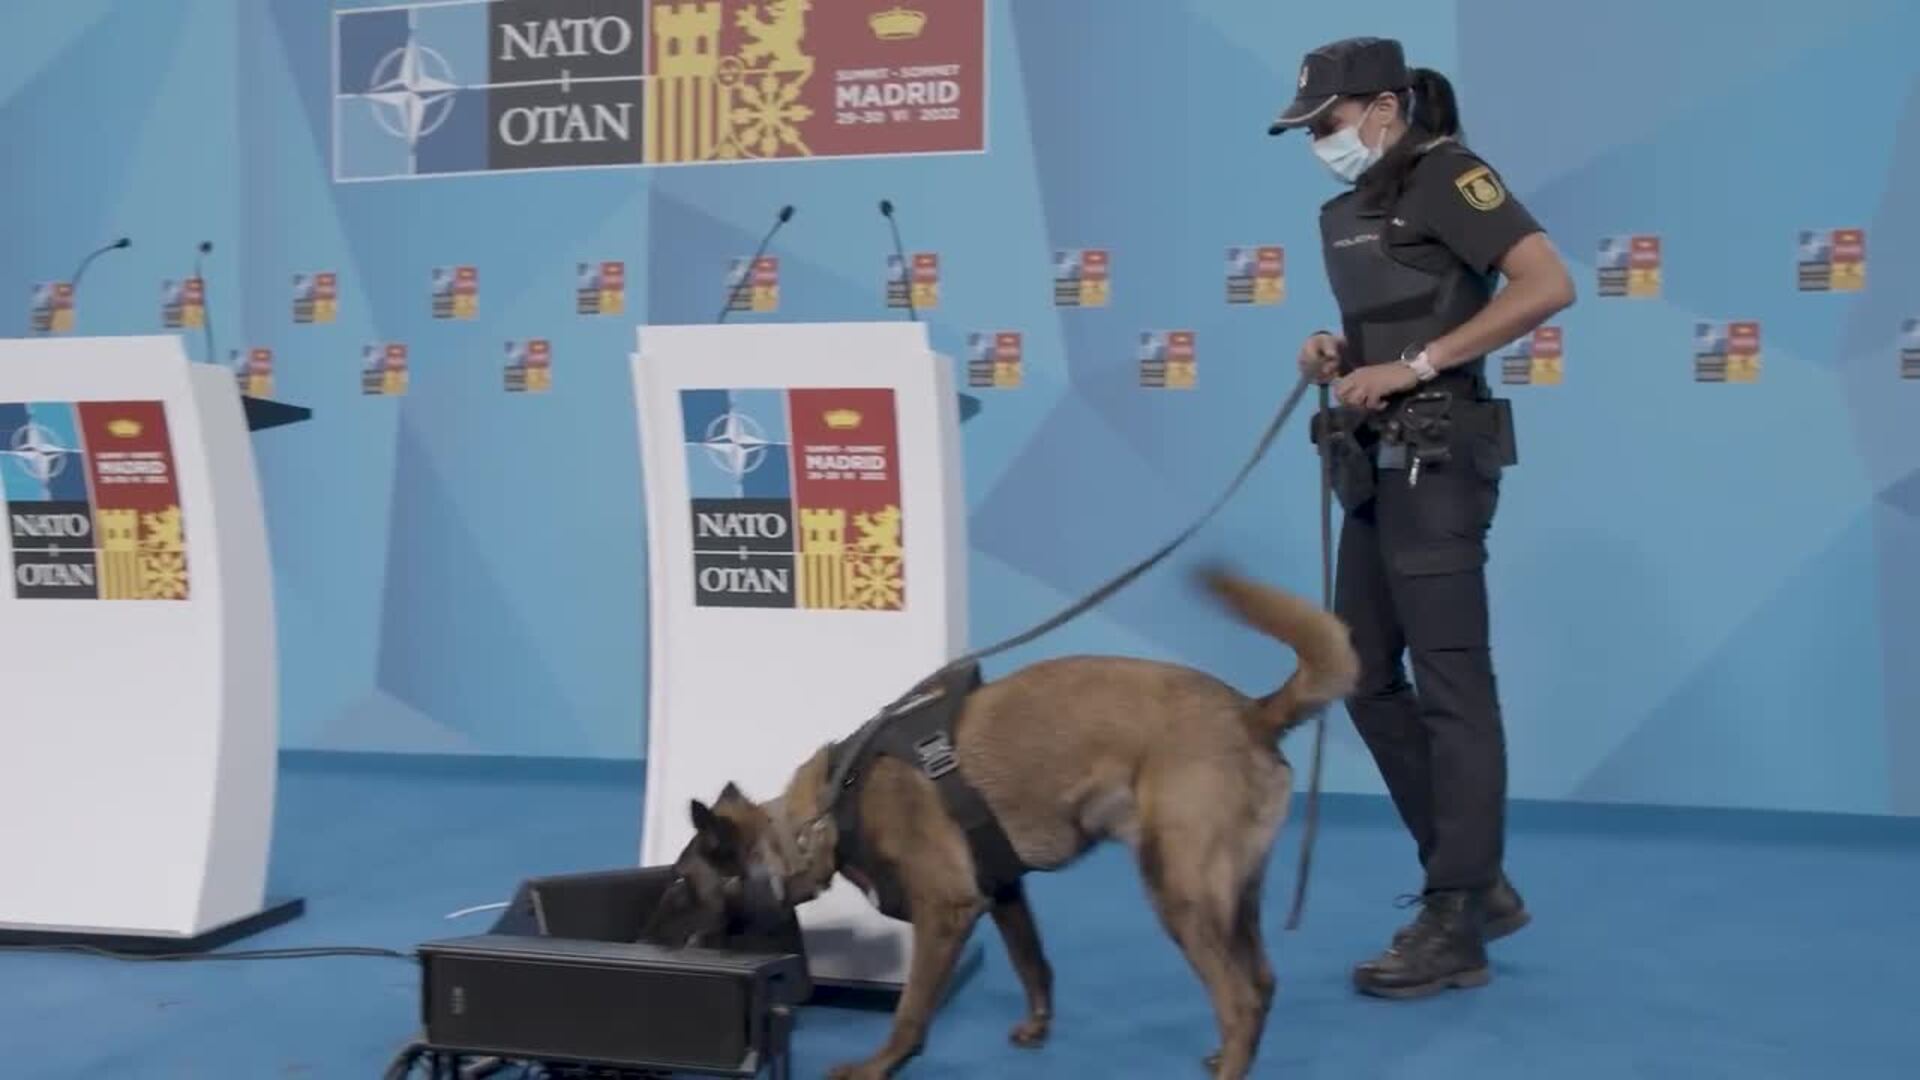 Cumbre OTAN - Preparativos Policia